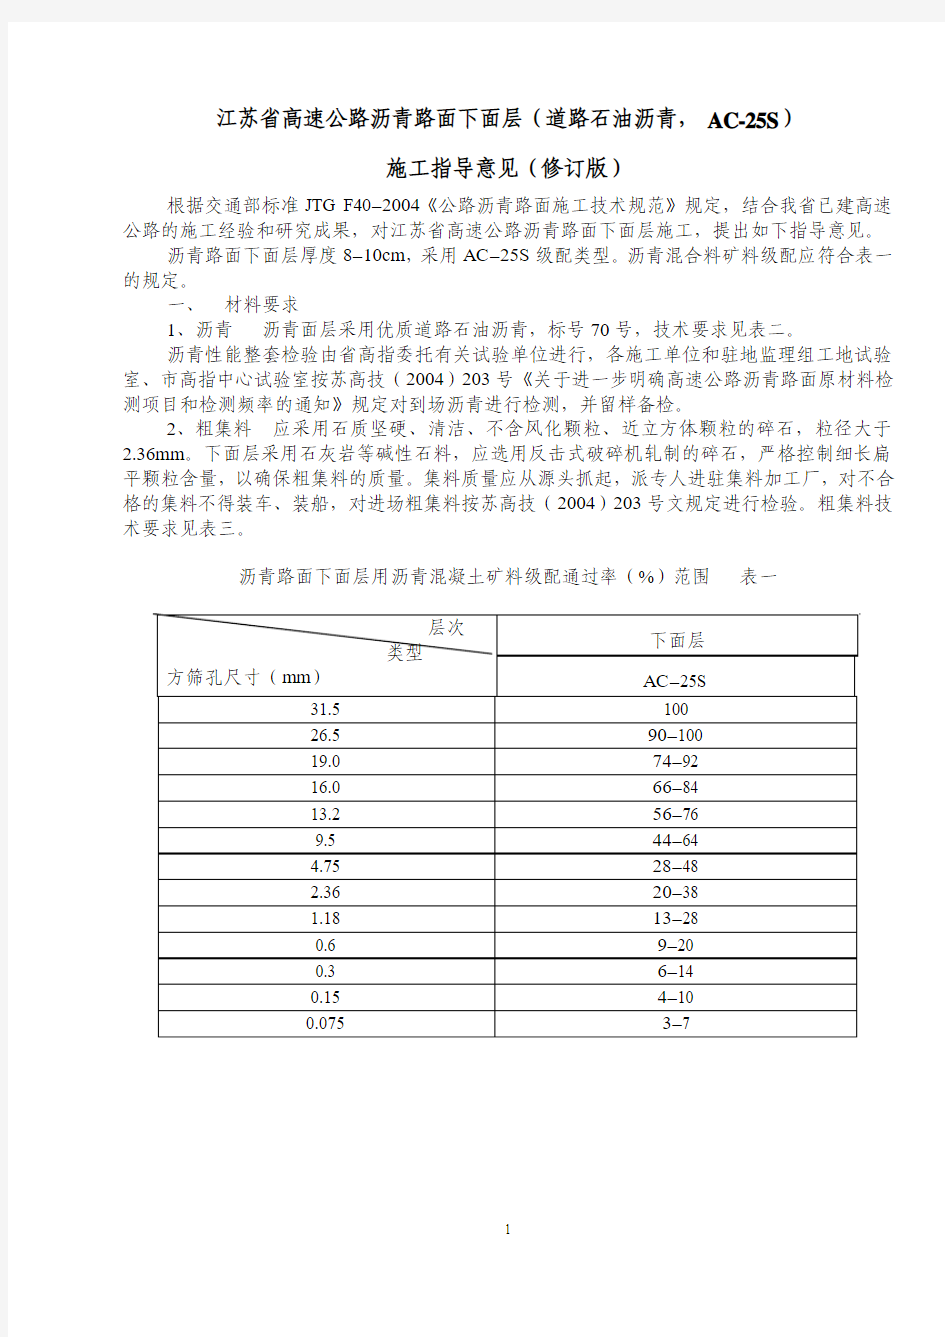 江苏省高速公路沥青路面下面层(道路石油沥青,AC-25S)施工指导意见(修订版)